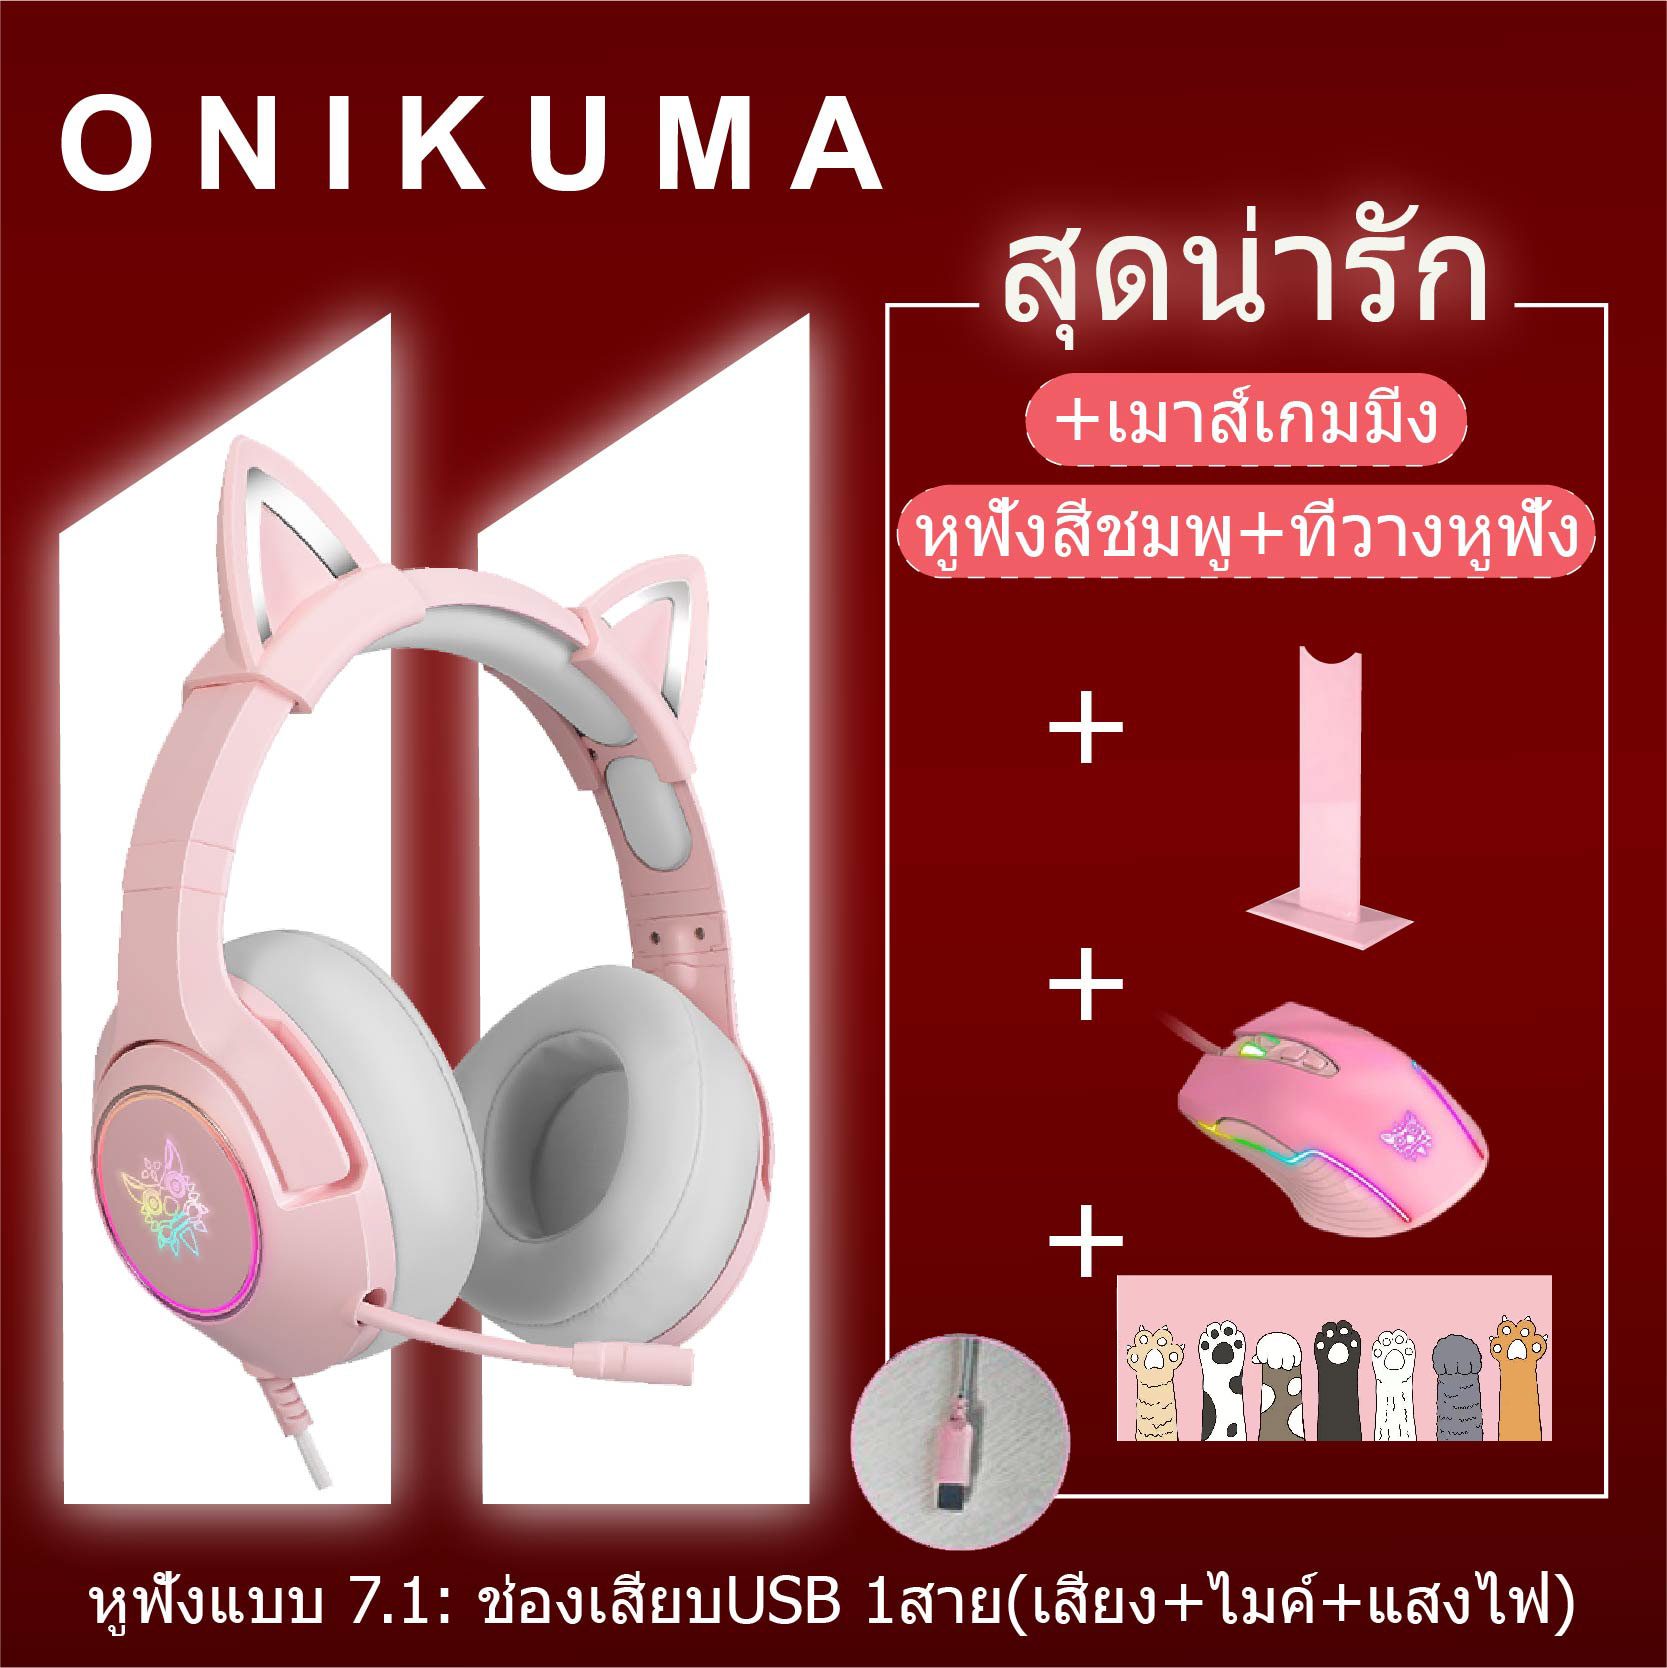 ONIKUMA หูฟังเกมขาตั้งที่วางหูฟัง ONIKUMA k9 หูฟังคอมพิวเตอร์พร้อมไมค  ชุดสูทหูแมวสีชมพู ถอดออกได้